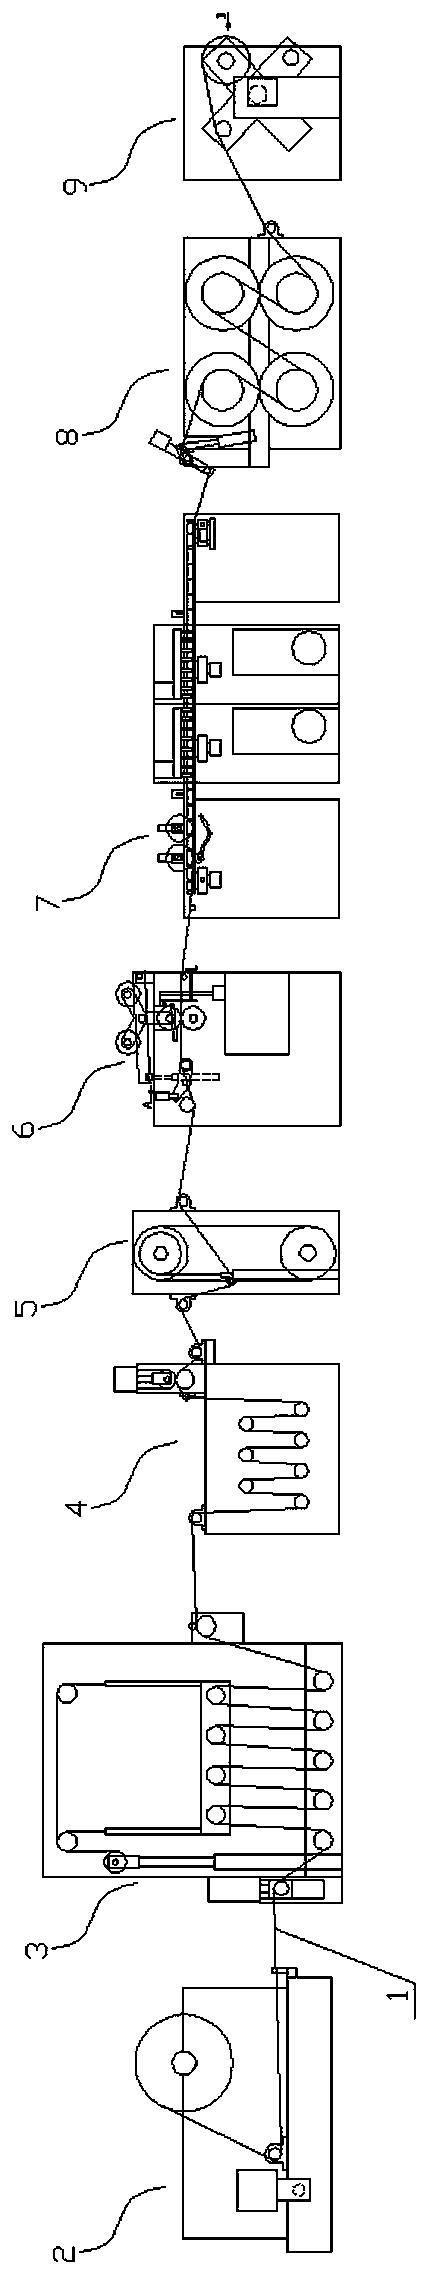 Coating machine based on switchover among three coating rolls